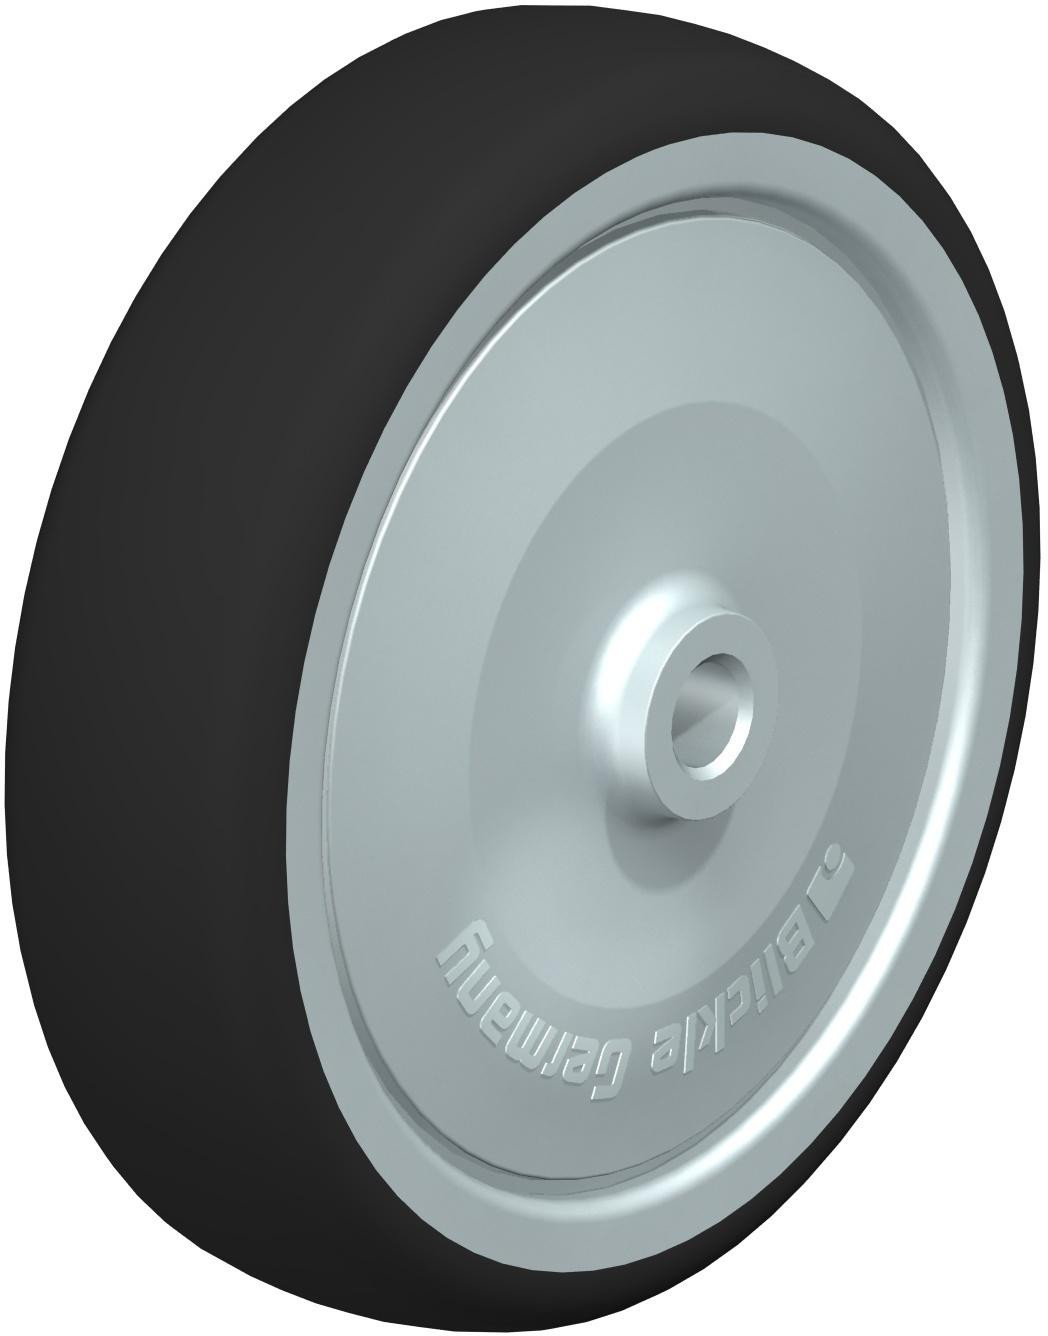 Roue à bande de roulement polyuréthane thermoplastique, avec corps de roue polyamide